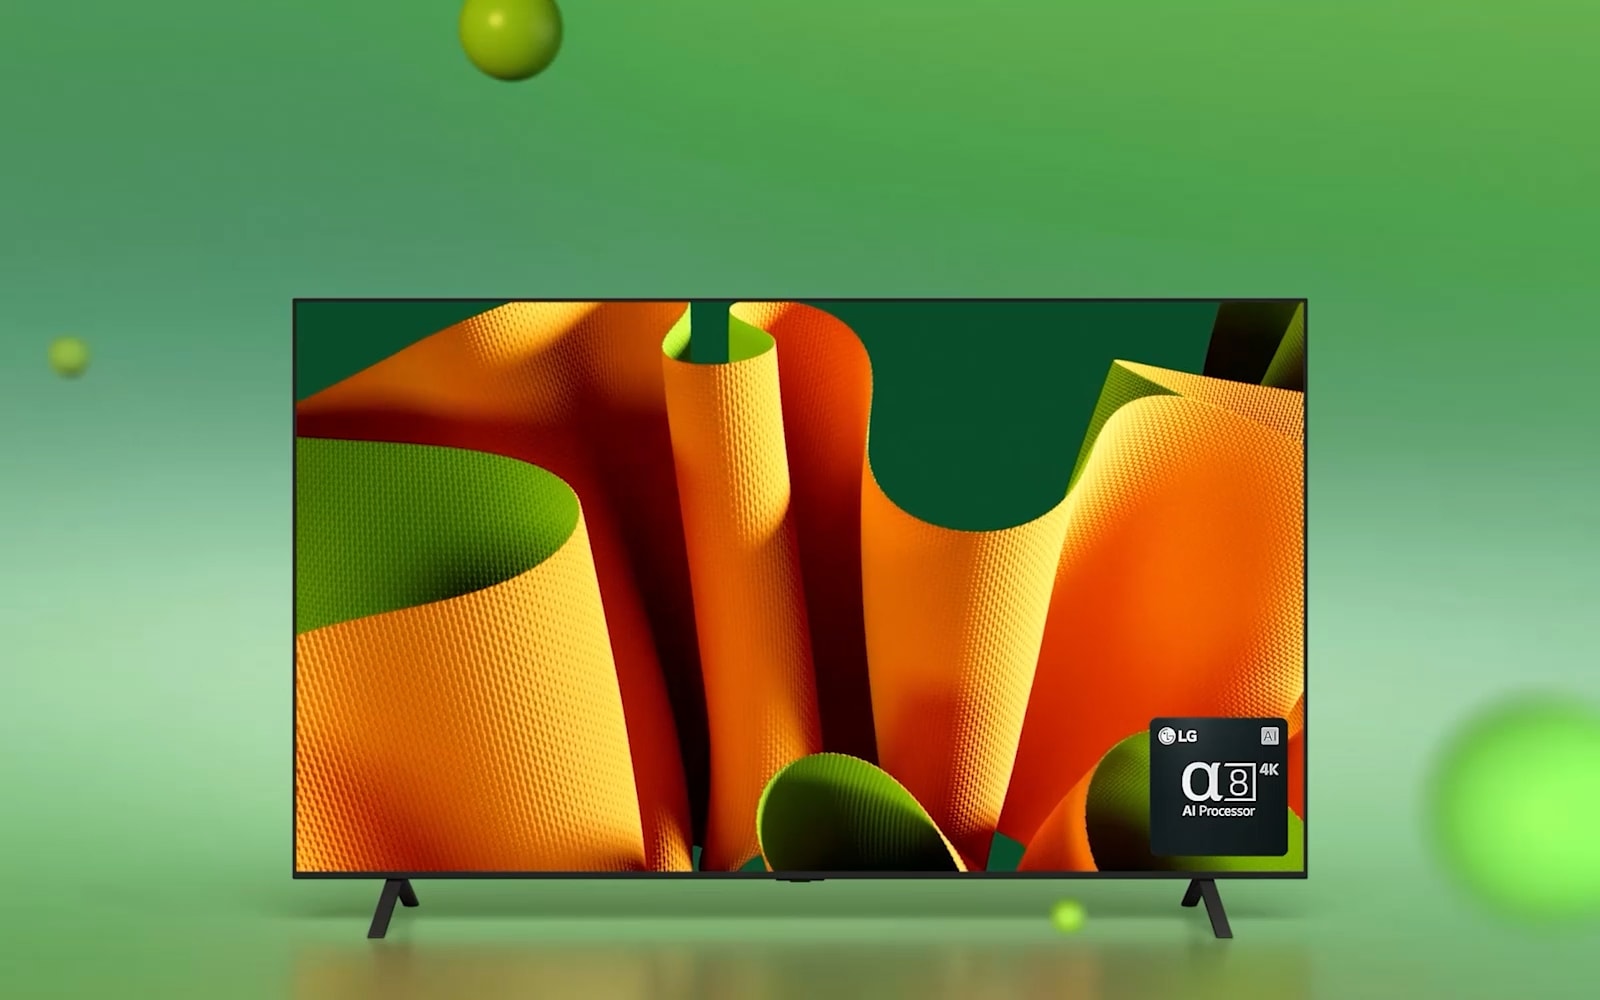 LG OLED B4 повернут на 45 градусов вправо с абстрактной зелено-оранжевой картиной на экране на зеленом фоне с 3D-сферами. Телевизор OLED поворачивается лицевой стороной вперед. В правом нижнем углу находится logo ИИ-процессора alpha 8 от компании LG.